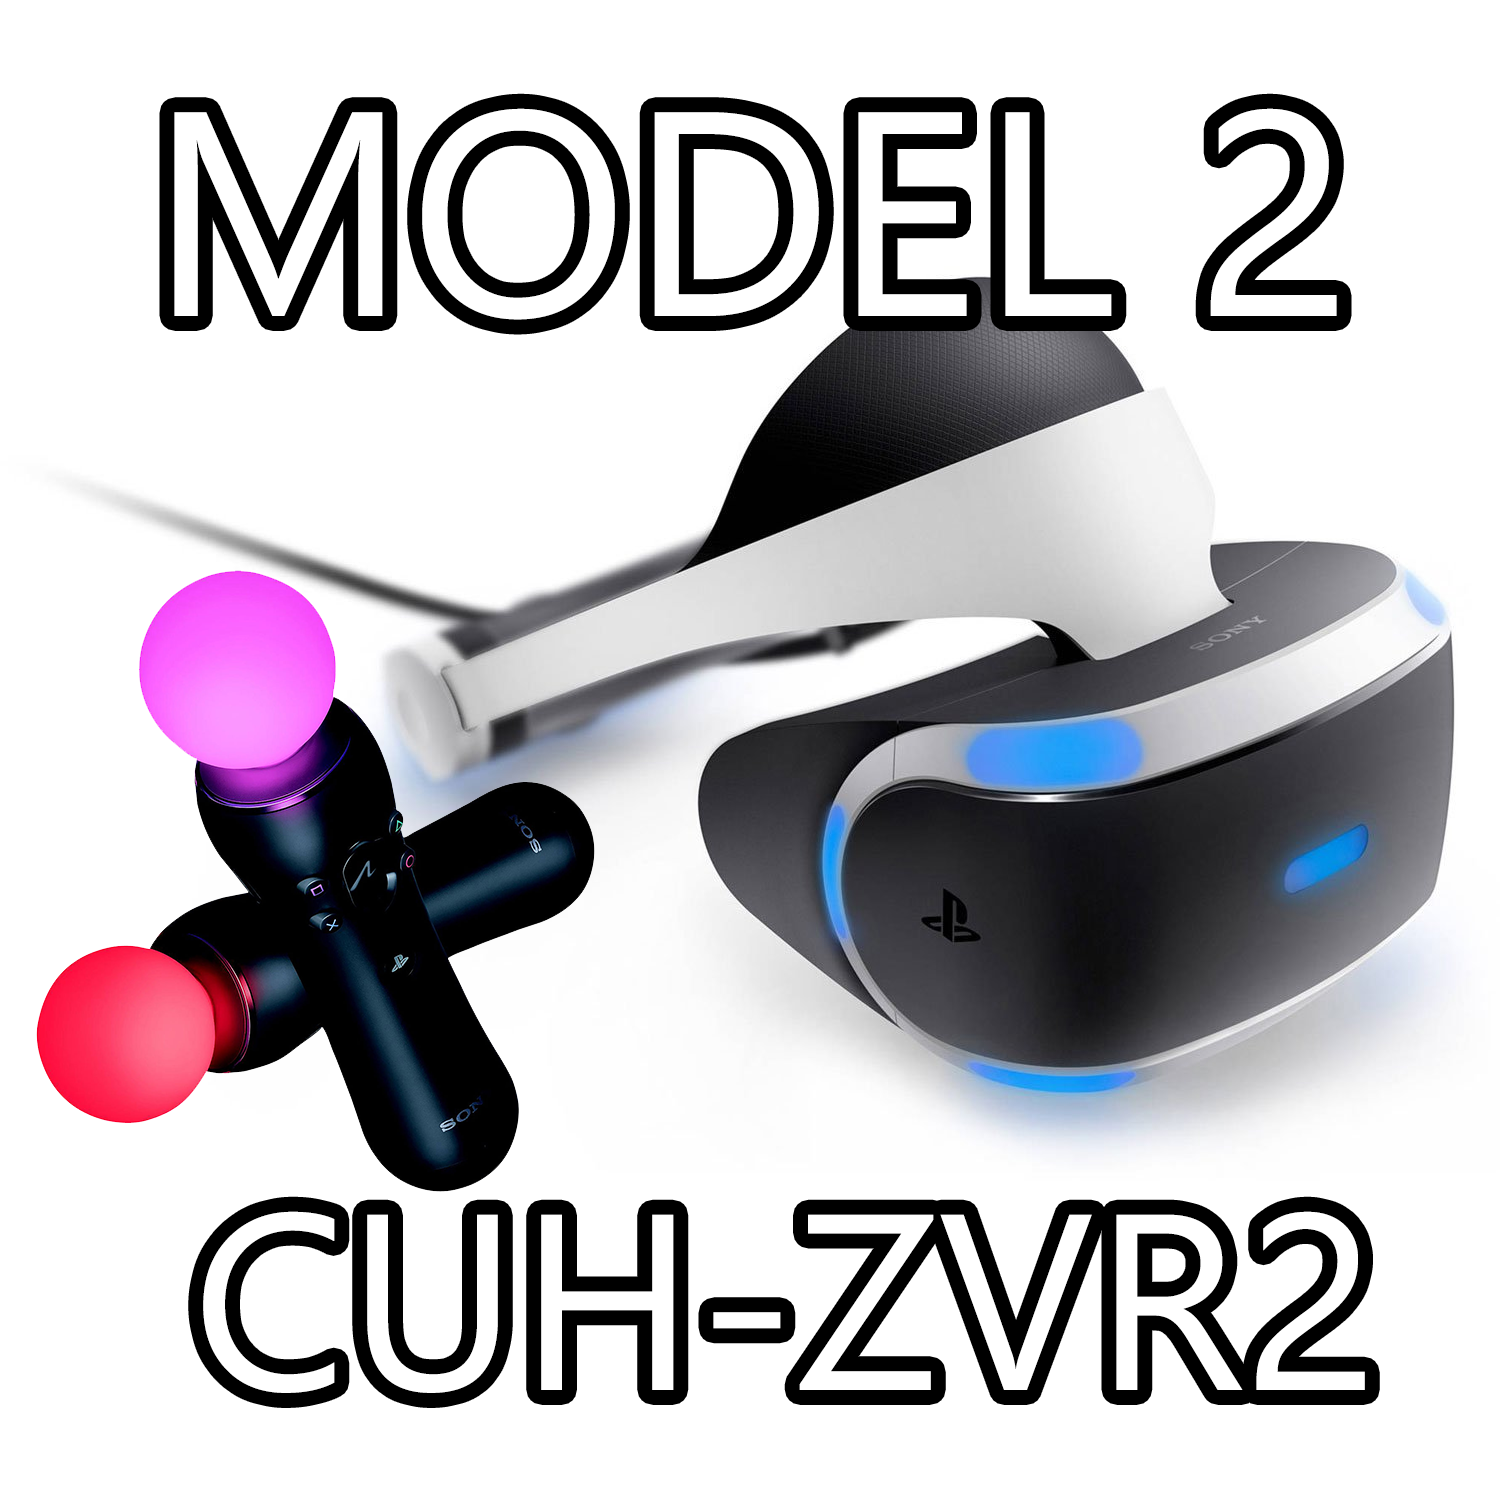 Bundle PlayStation VR Model 2 (CUH-ZVR2) - Comprend 2 contrôleurs de déplacement